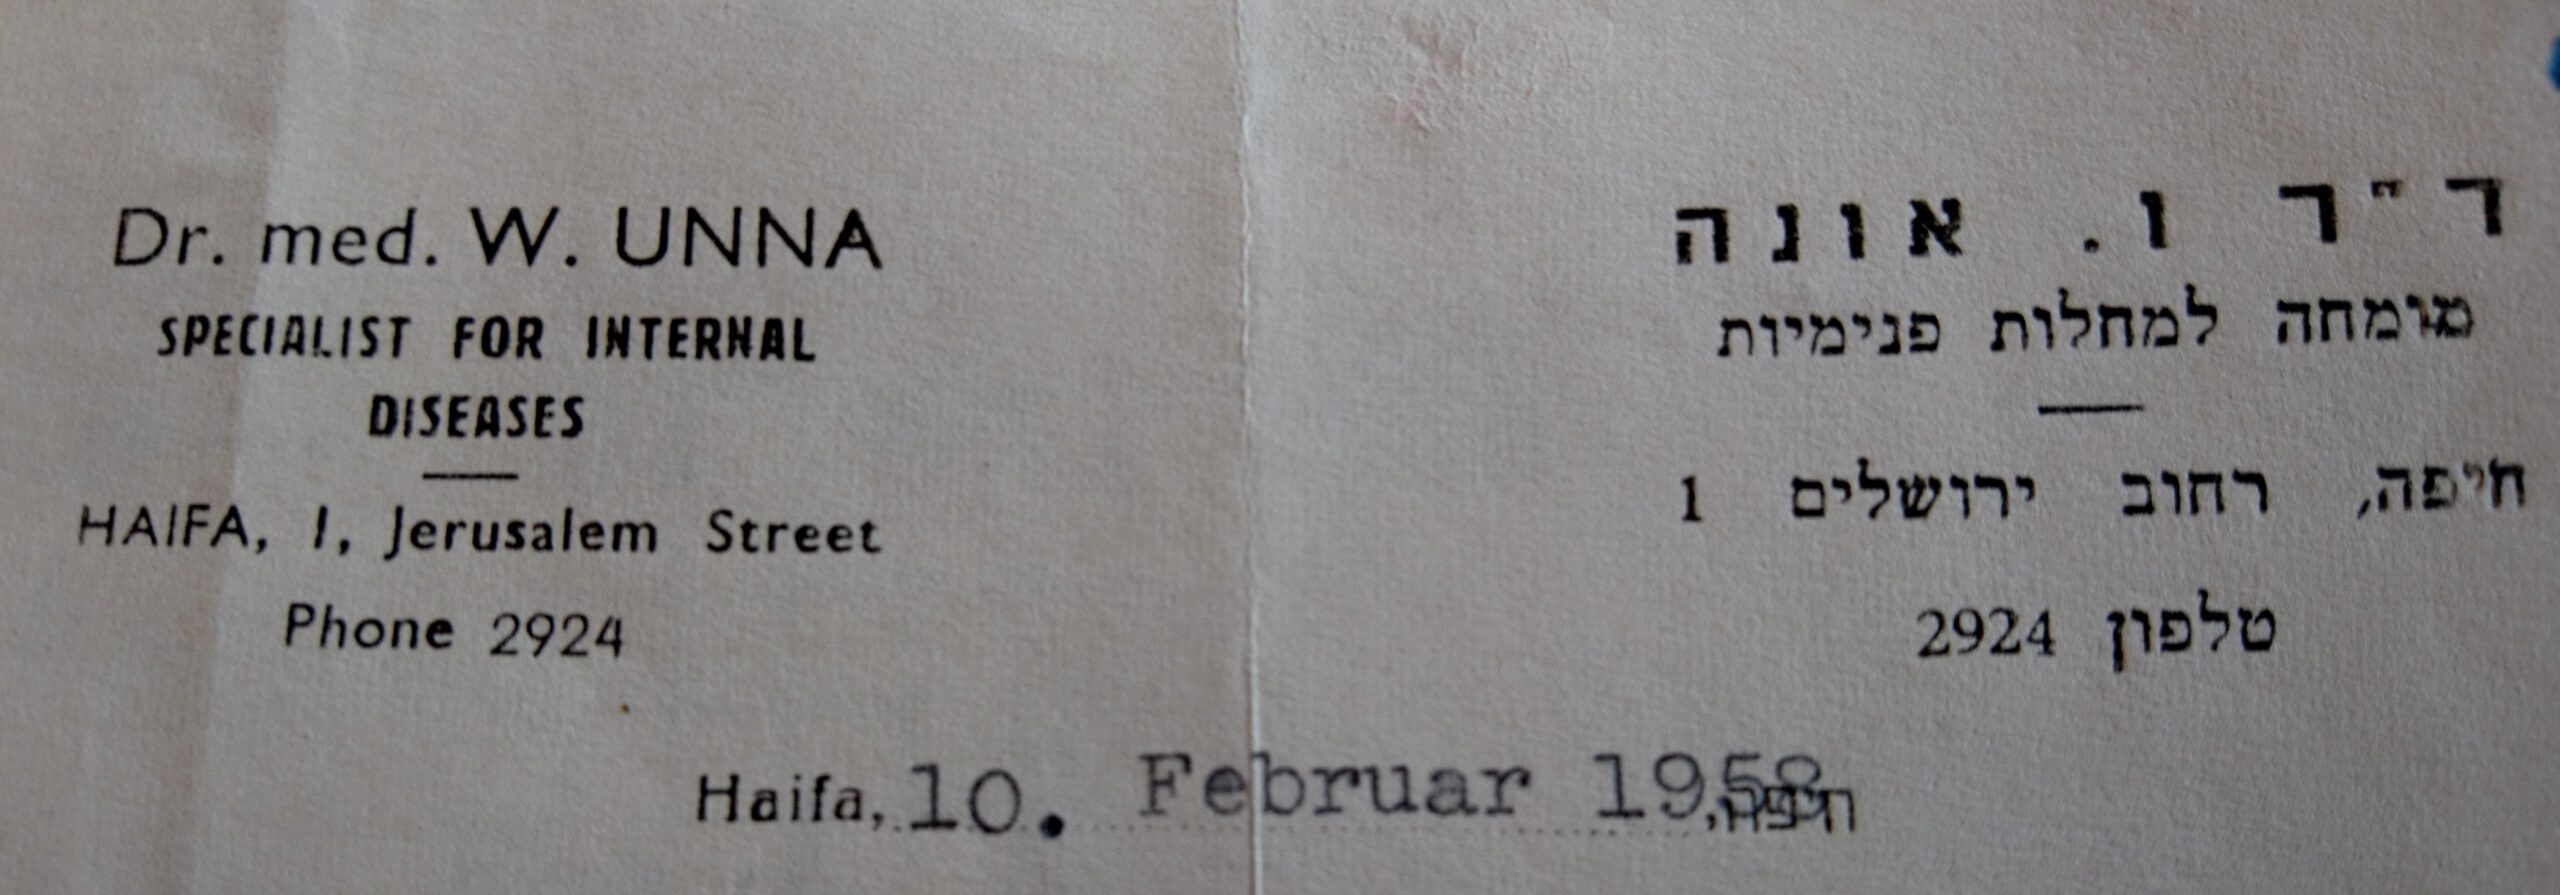 William Unnas Praxisadresse 1958, Quelle Staatsarchiv Hamburg, Entschädigungsakte William Unna